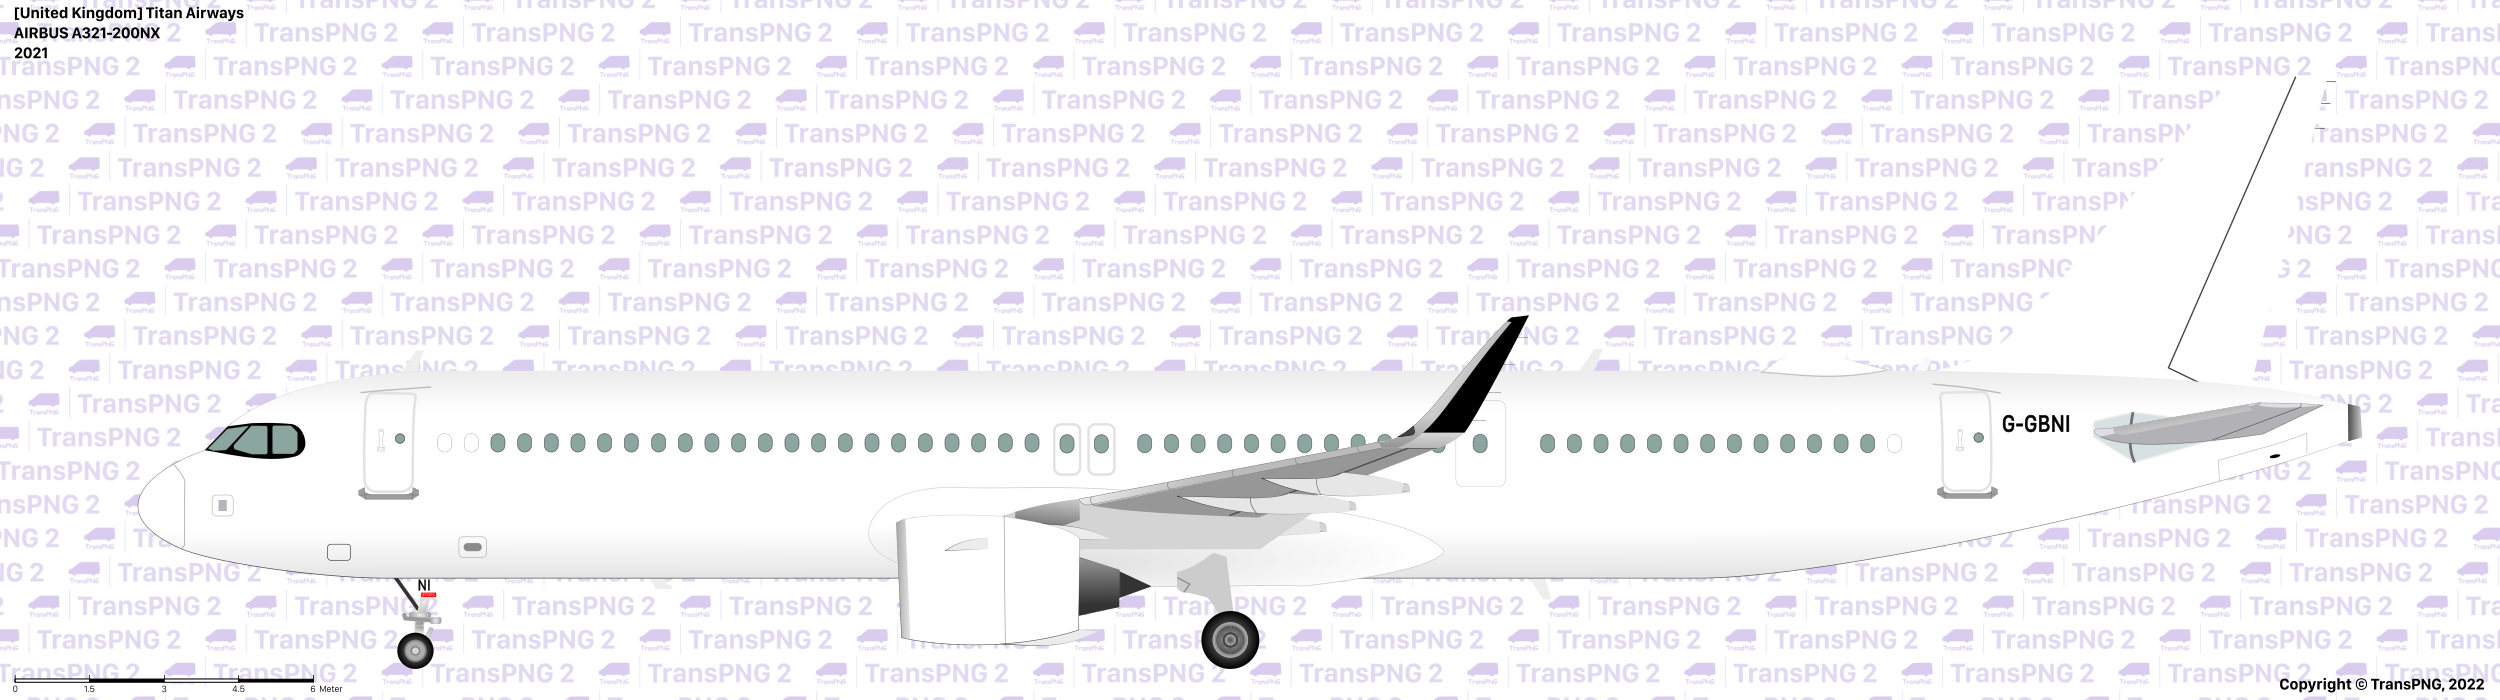 TransPNG.net | 分享世界各地多種交通工具的優秀繪圖 - 飛機 51922656852_23e2728676_o